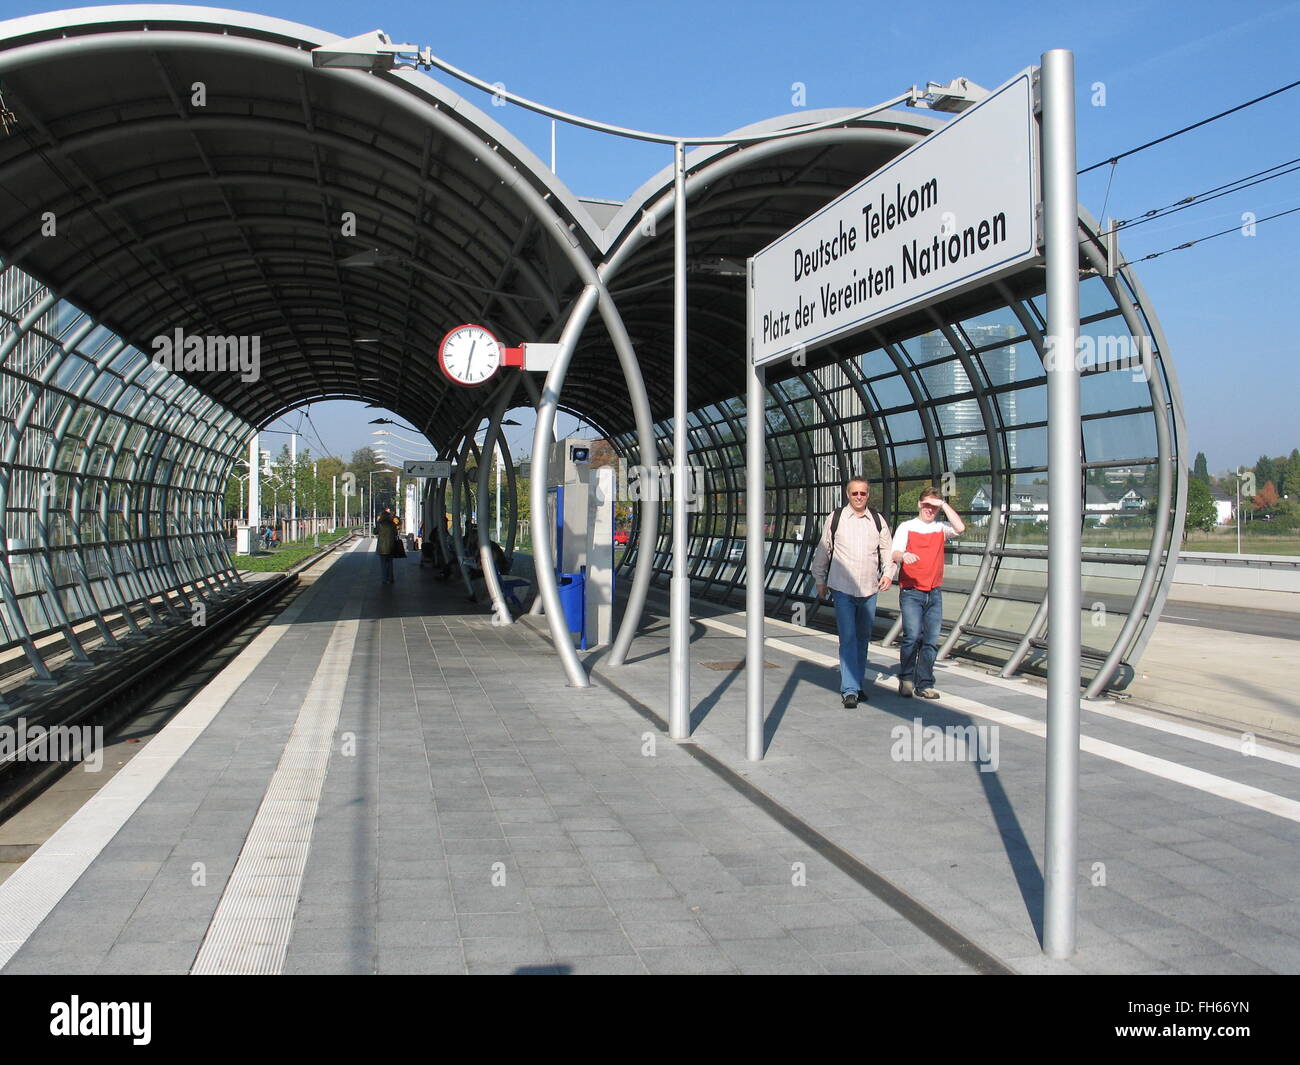 underground station 'Deutsche Telekom' in Bonn, Germany Stock Photo